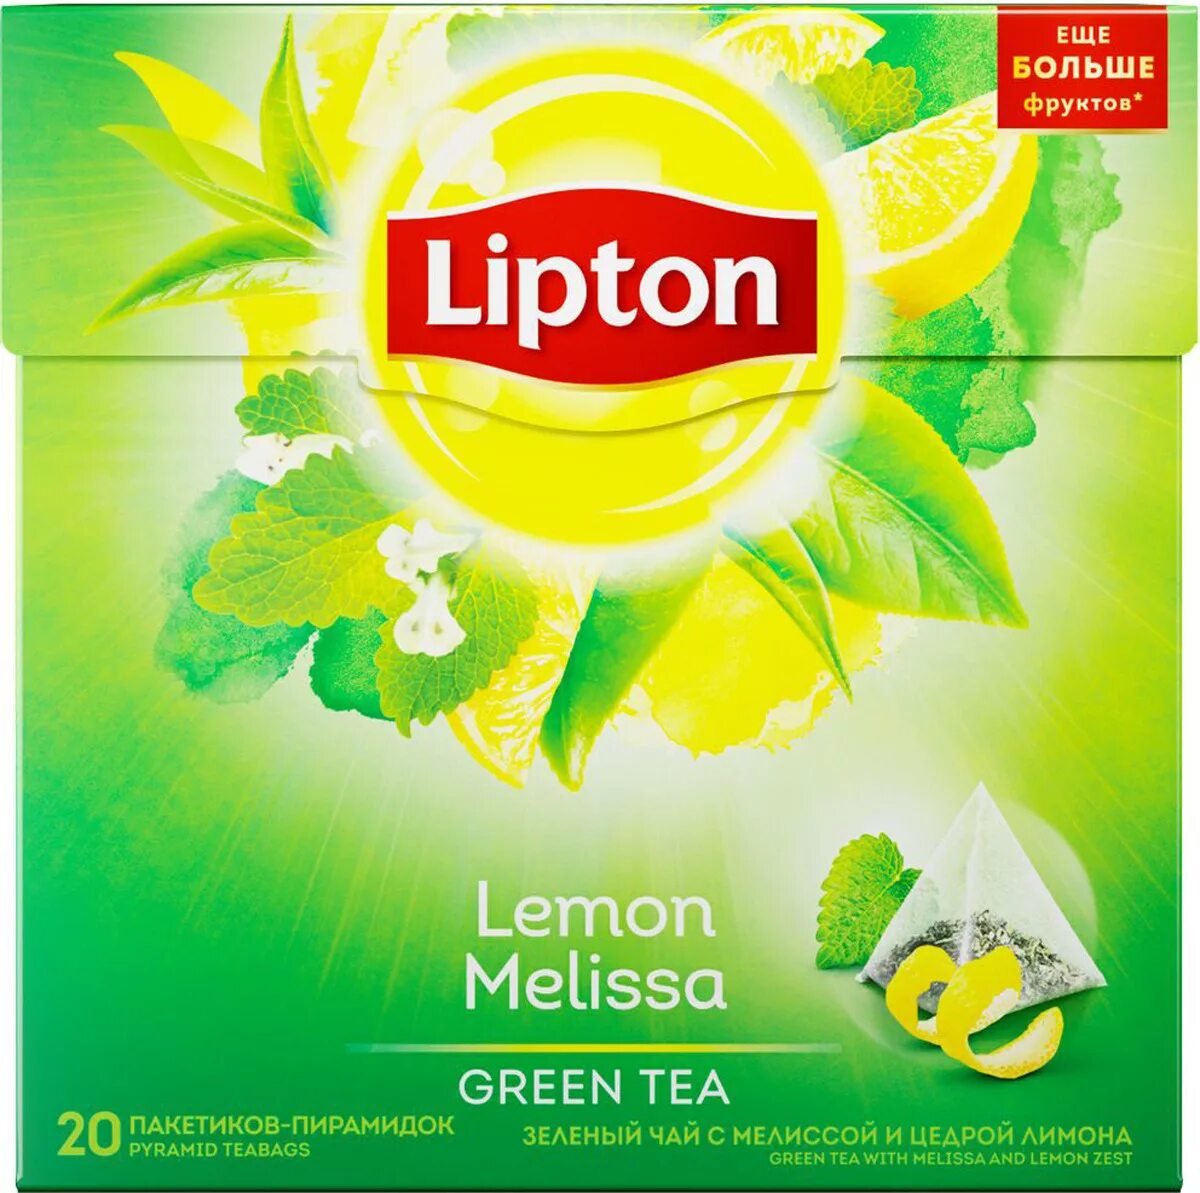 Купить чай лимон. Зелёный чай Липтон в пакетиках. Зелёный чай Липтон в пакетиках и лимон.